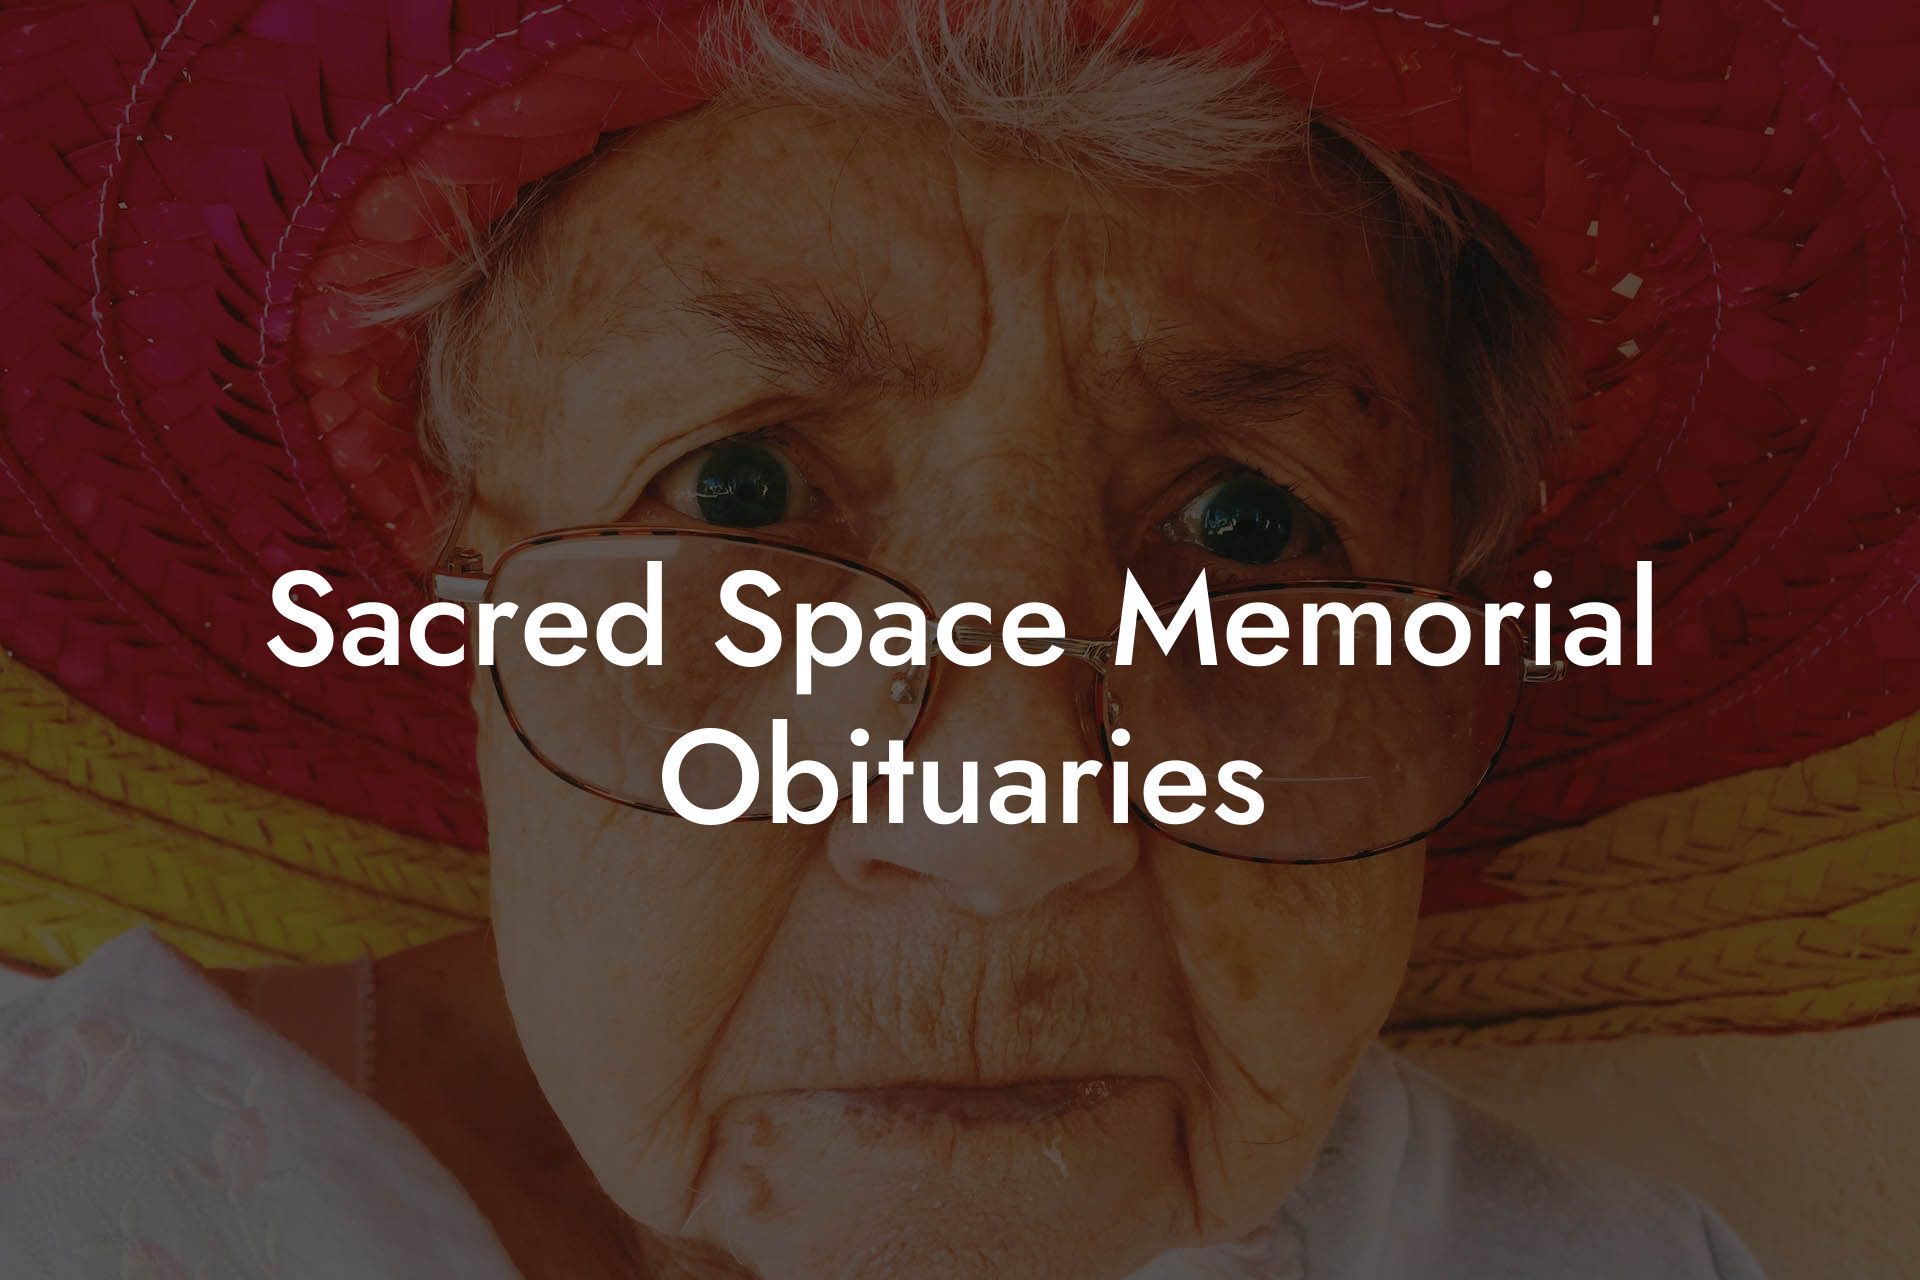 Sacred Space Memorial Obituaries